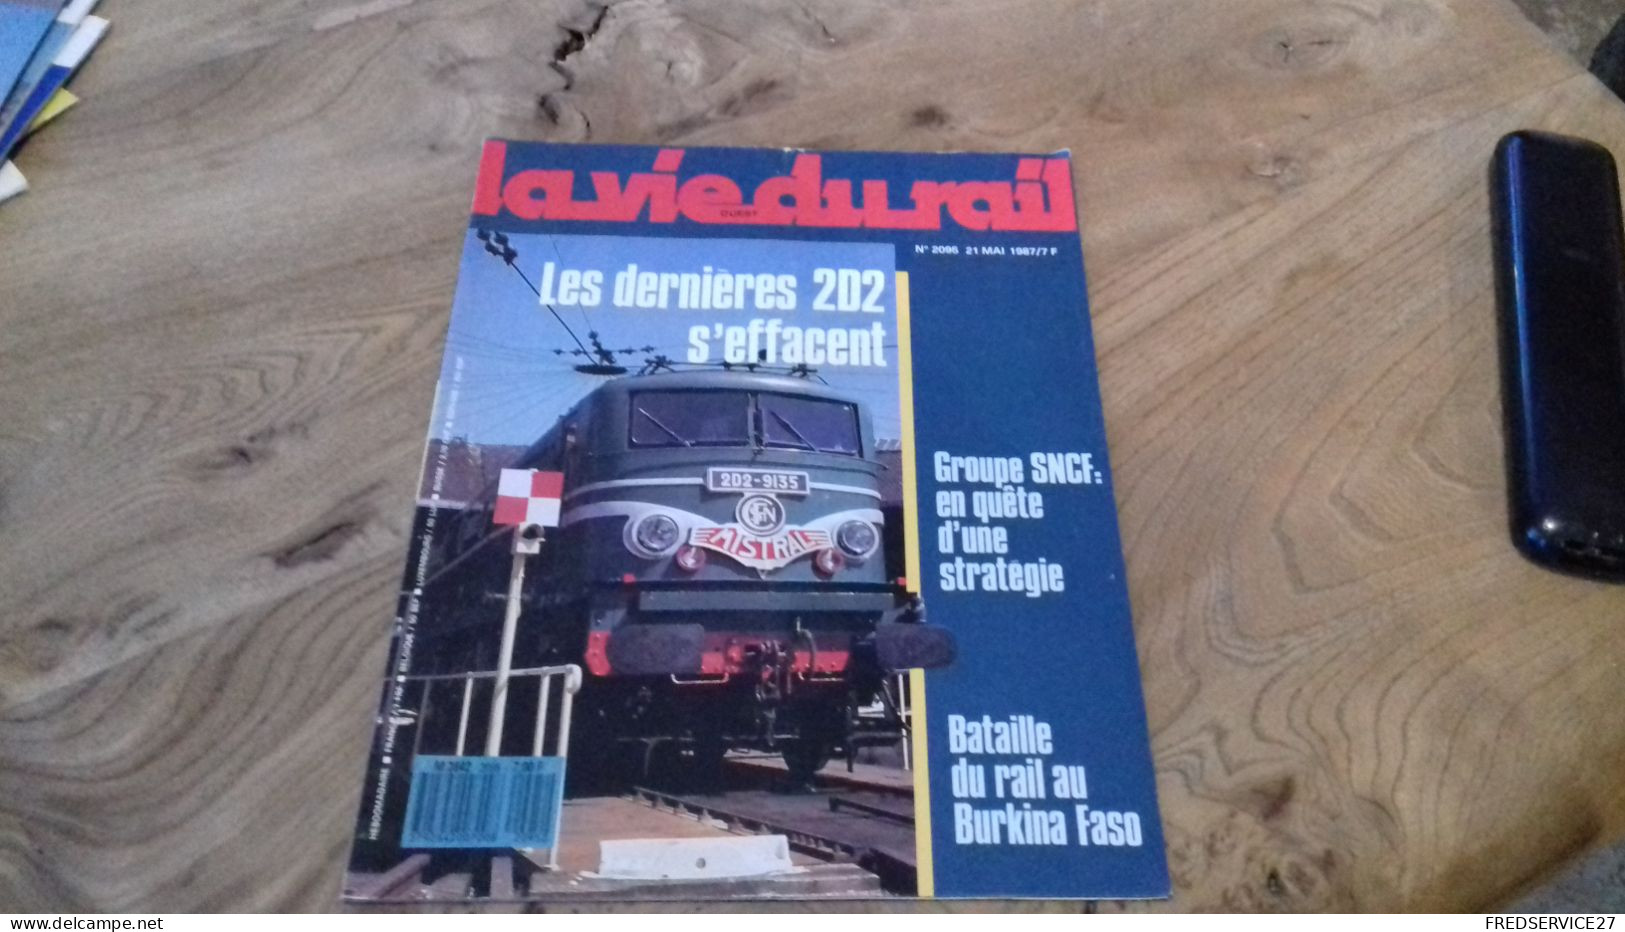 155/ LA VIE DU RAIL N° 2095  / JUIN 1987 / LES DERNIERES 2D2 S EFFACENT / GROUPE SNCF EN QUETE D UNE STRATEGIE - Treni